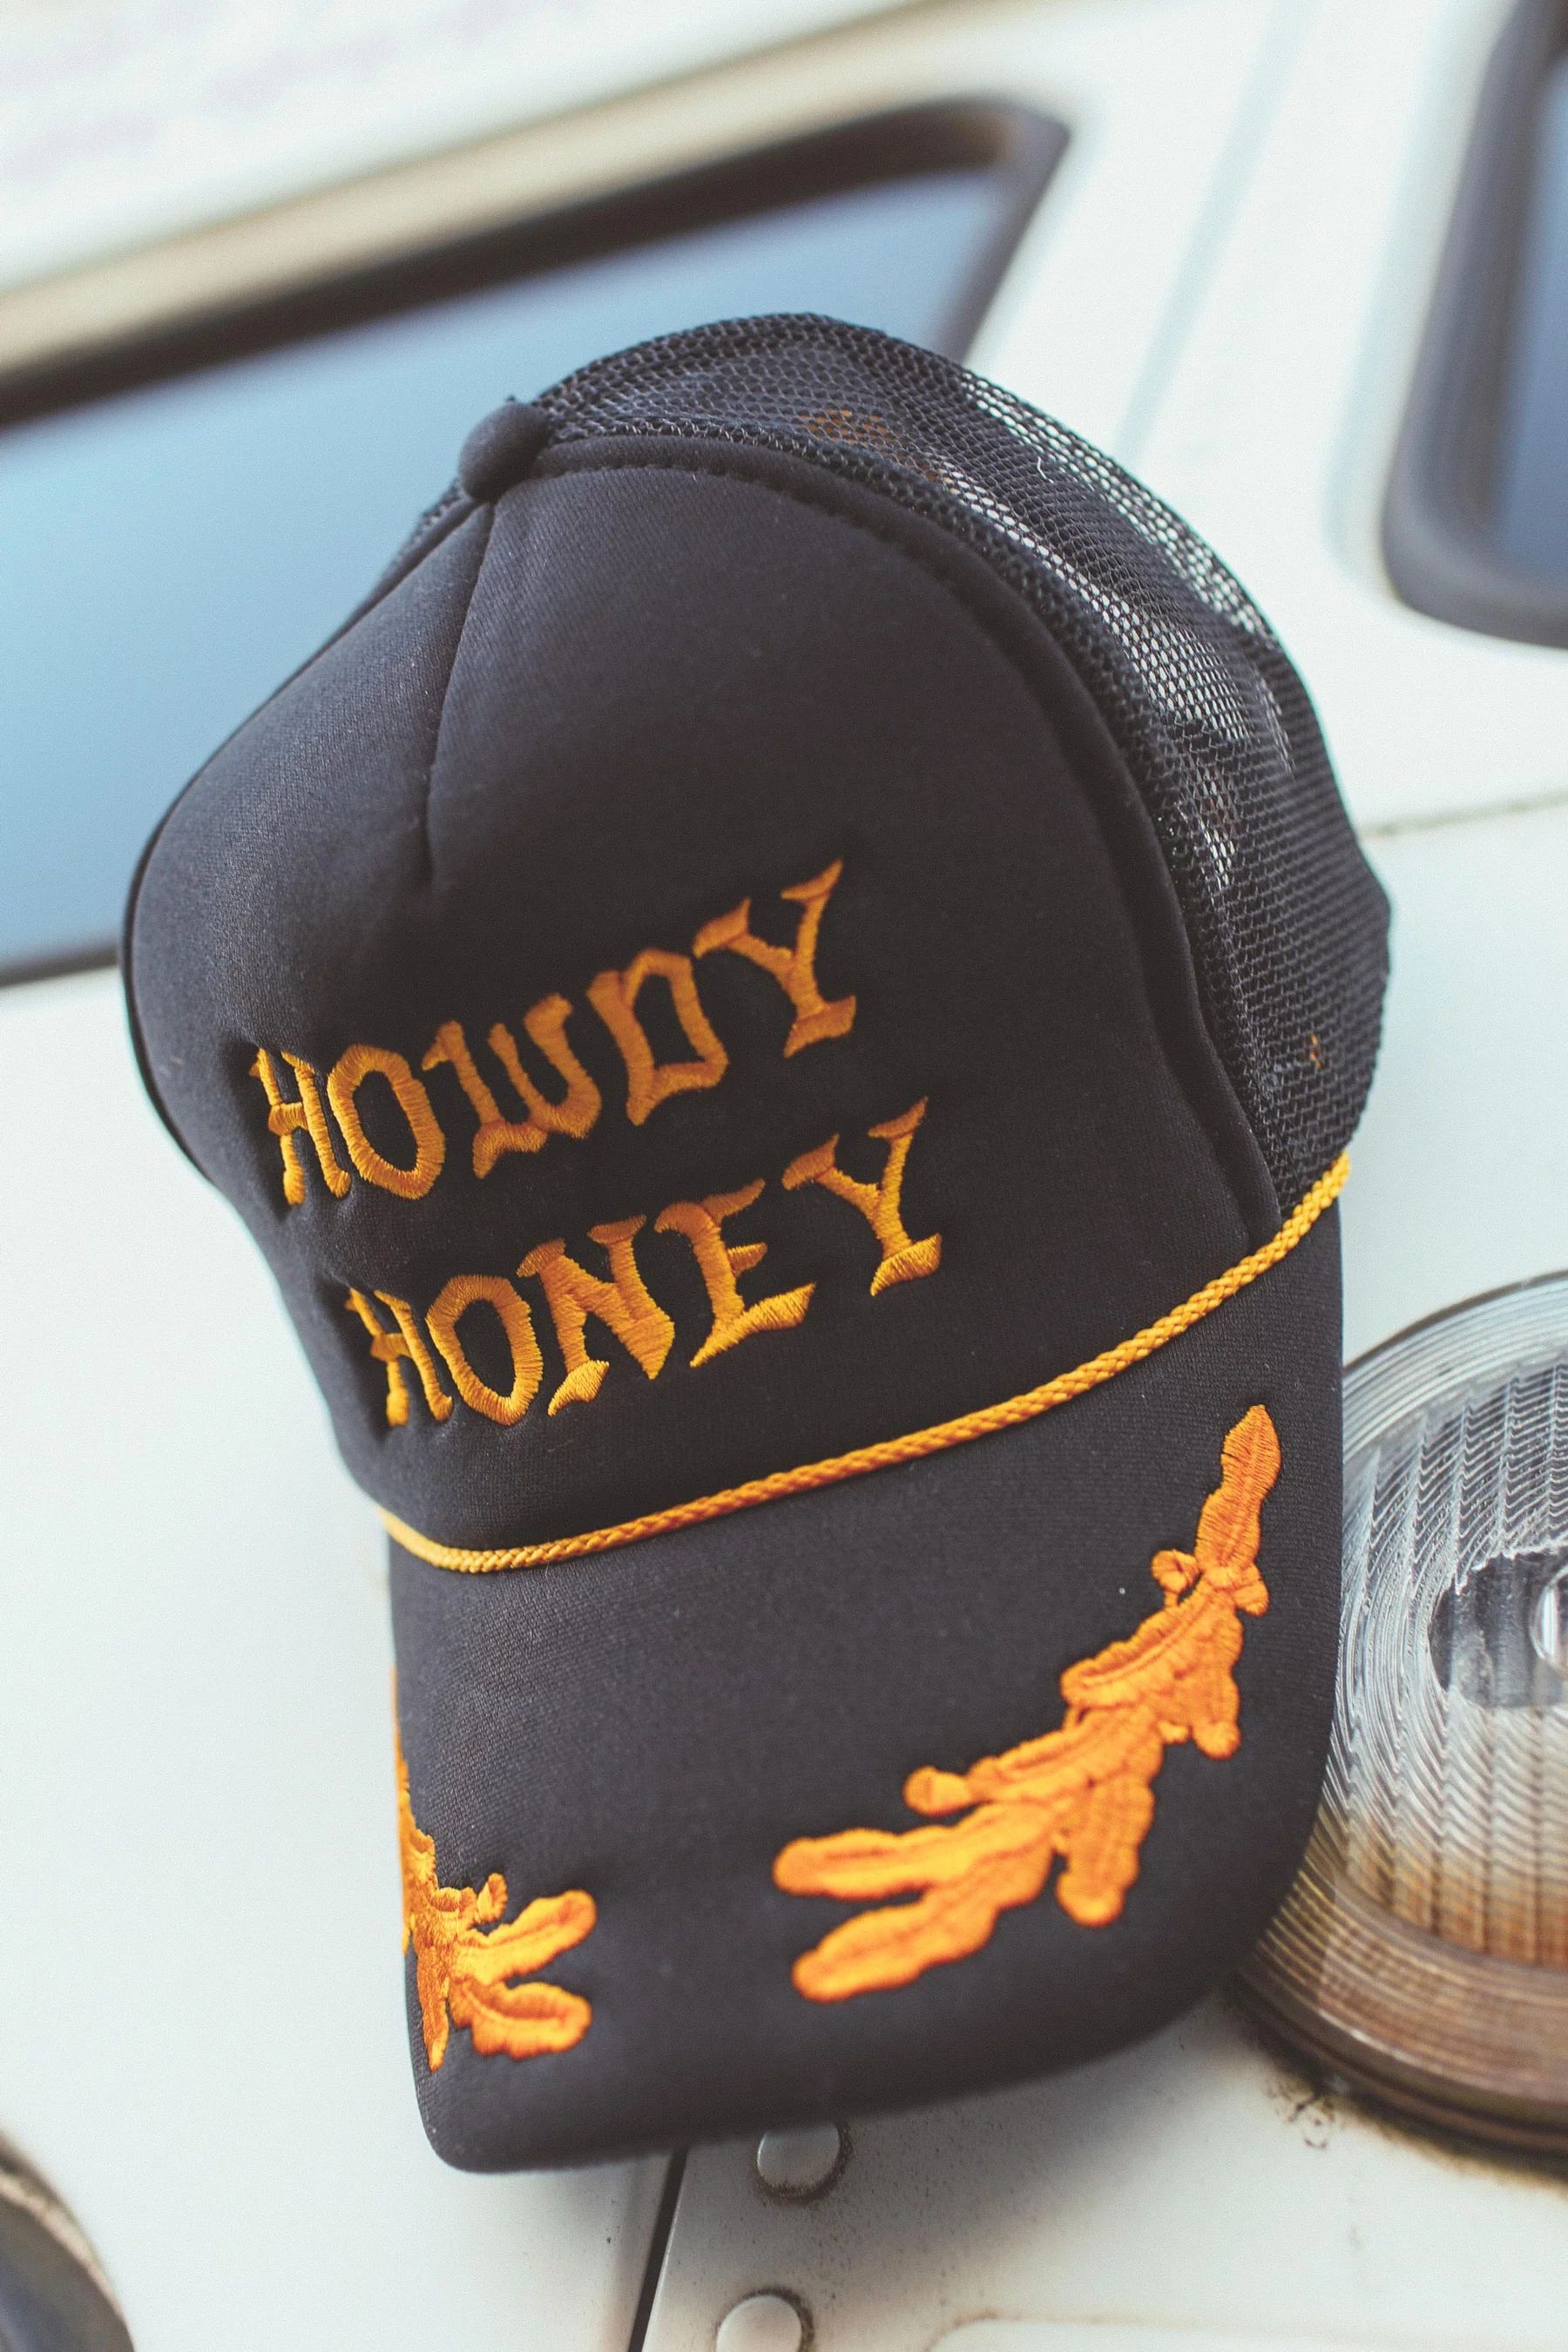 charlie southern: howdy honey trucker hat | RIFFRAFF